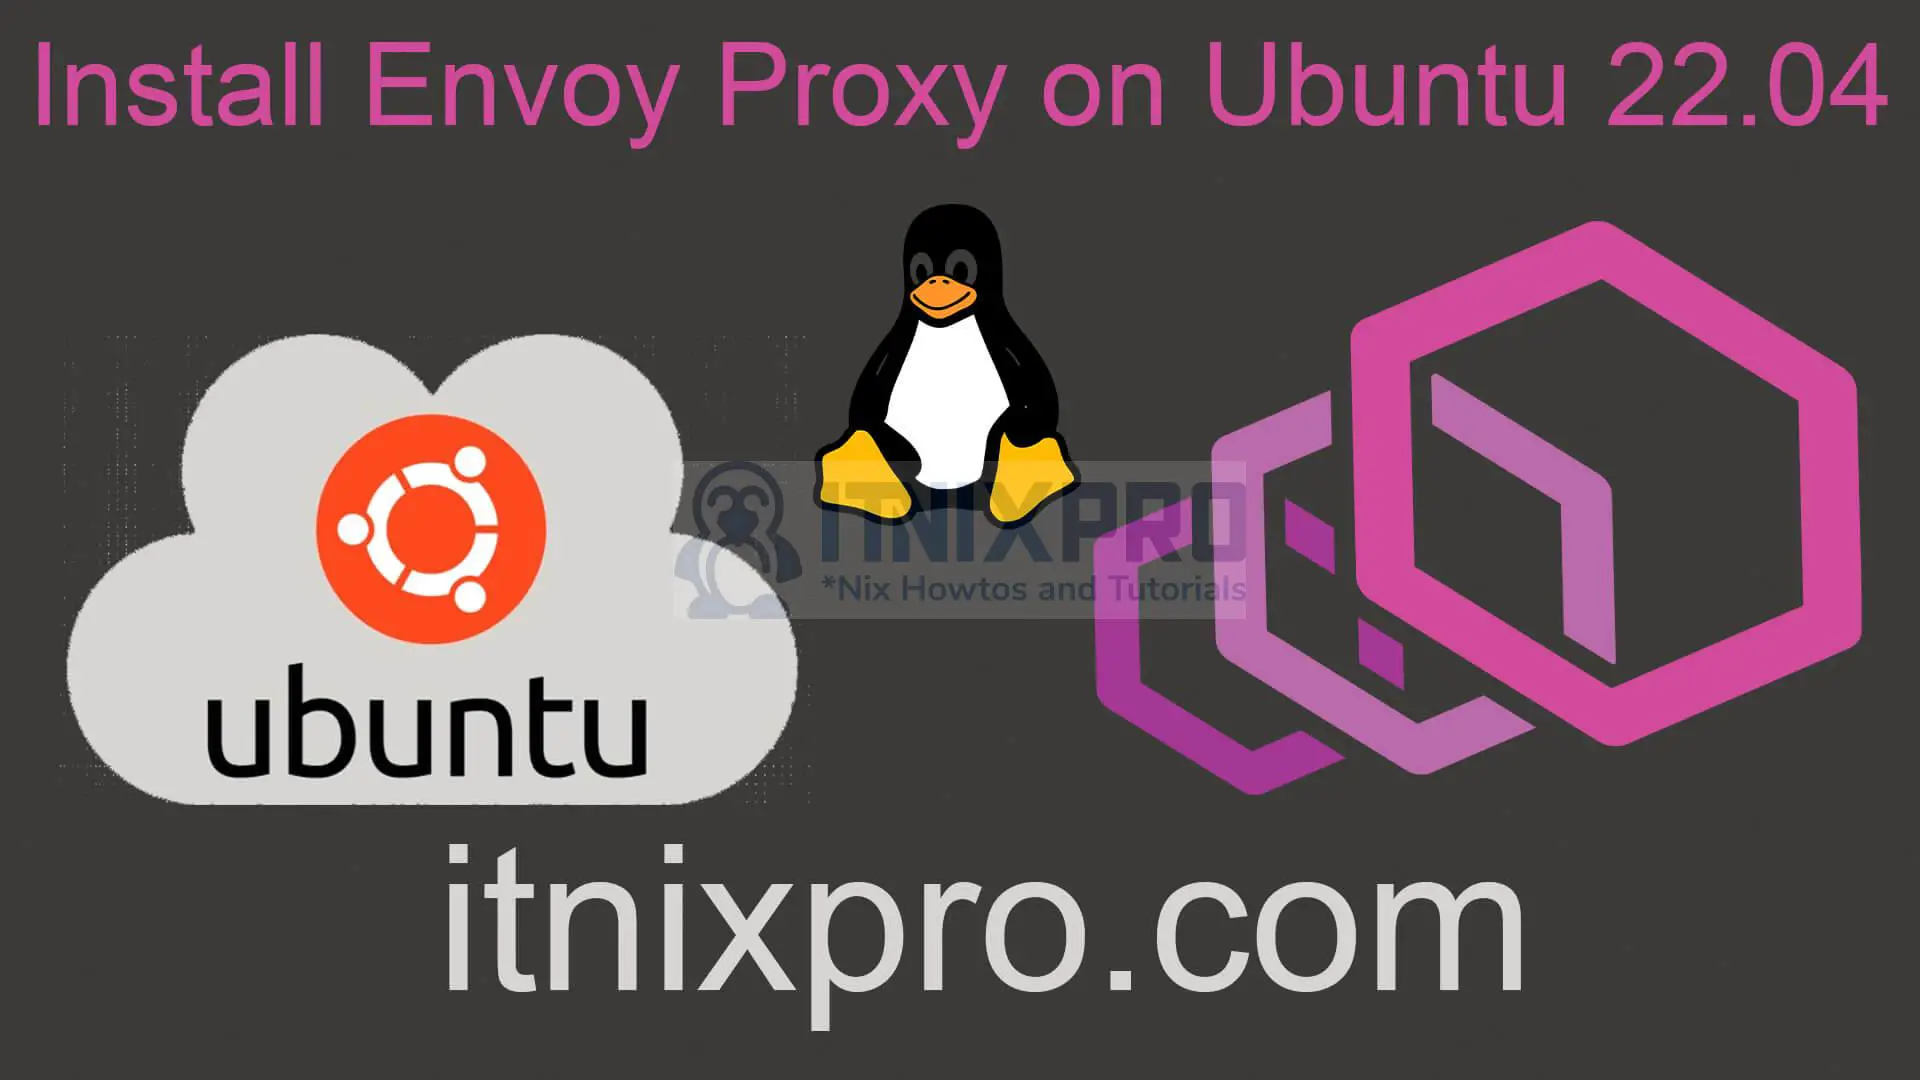 Install Envoy Proxy on Ubuntu 22.04